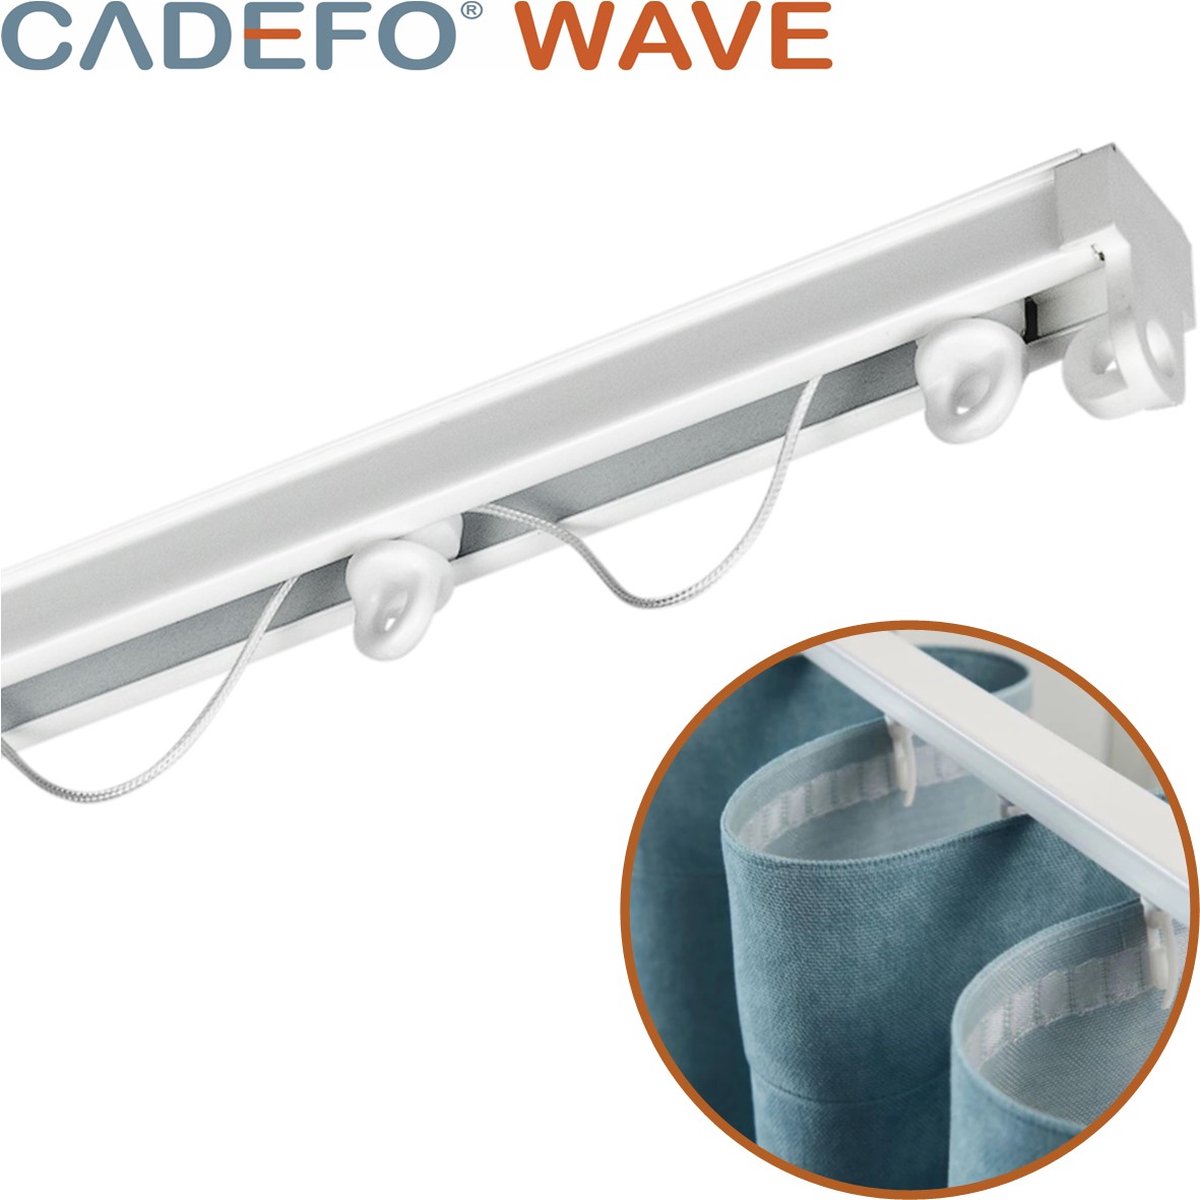 CADEFO WAVE (251 - 300 cm) Gordijnrails - Compleet op maat! - UIT 1 STUK - Leverbaar tot 6 meter - Plafondbevestiging - Lengte 296 cm